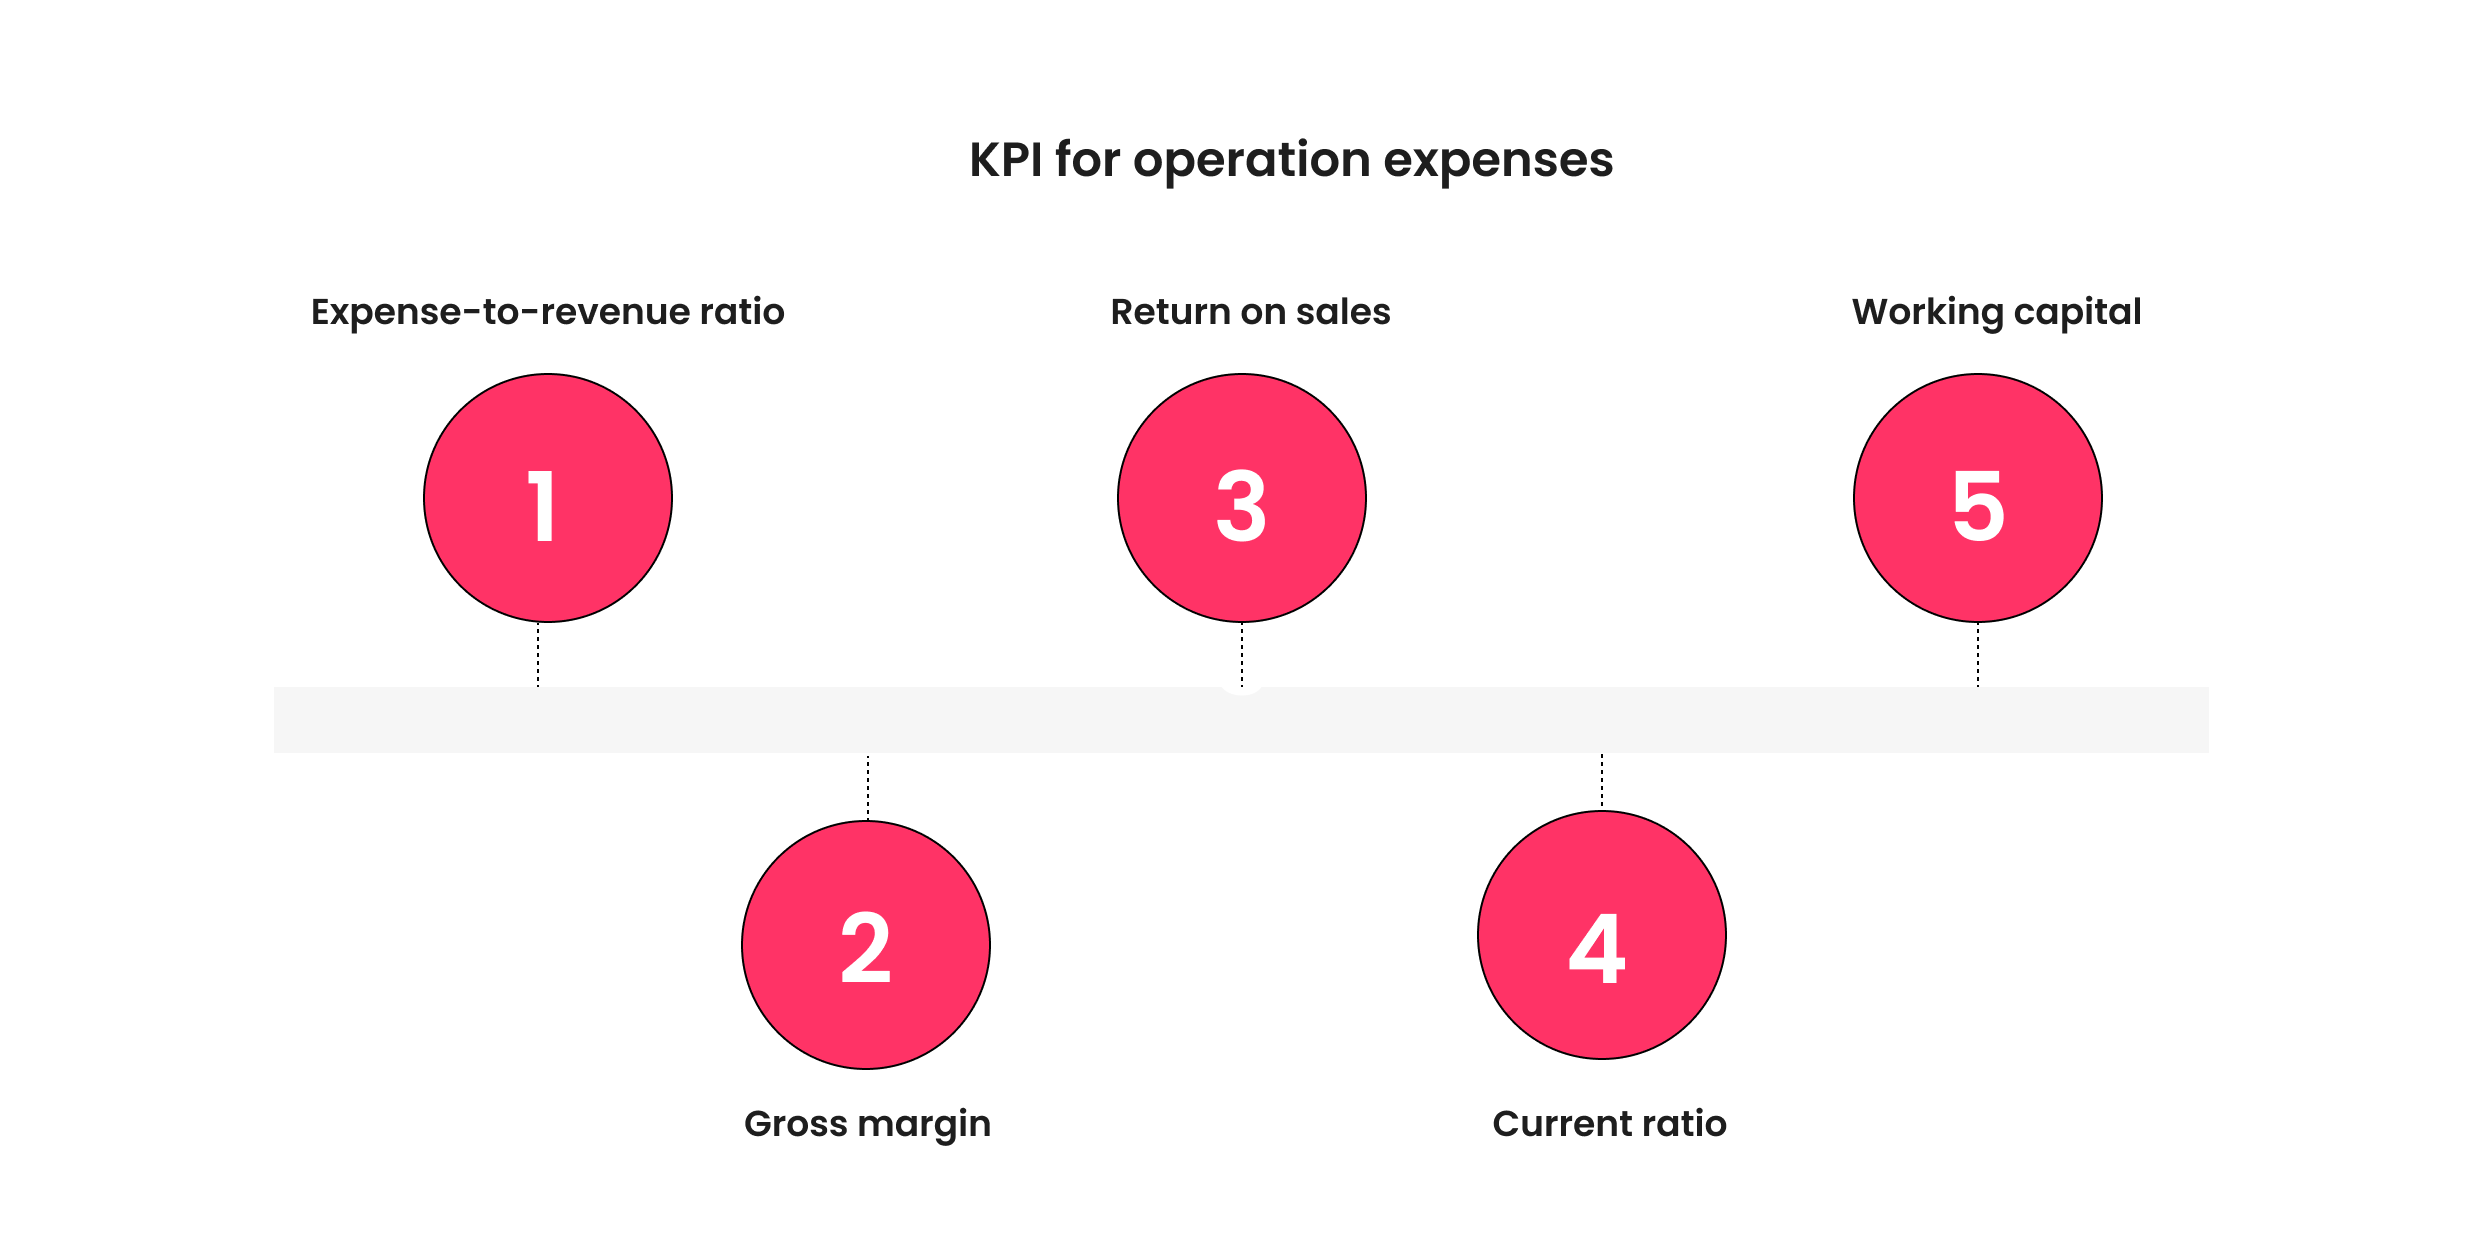 KPI for operating expenses